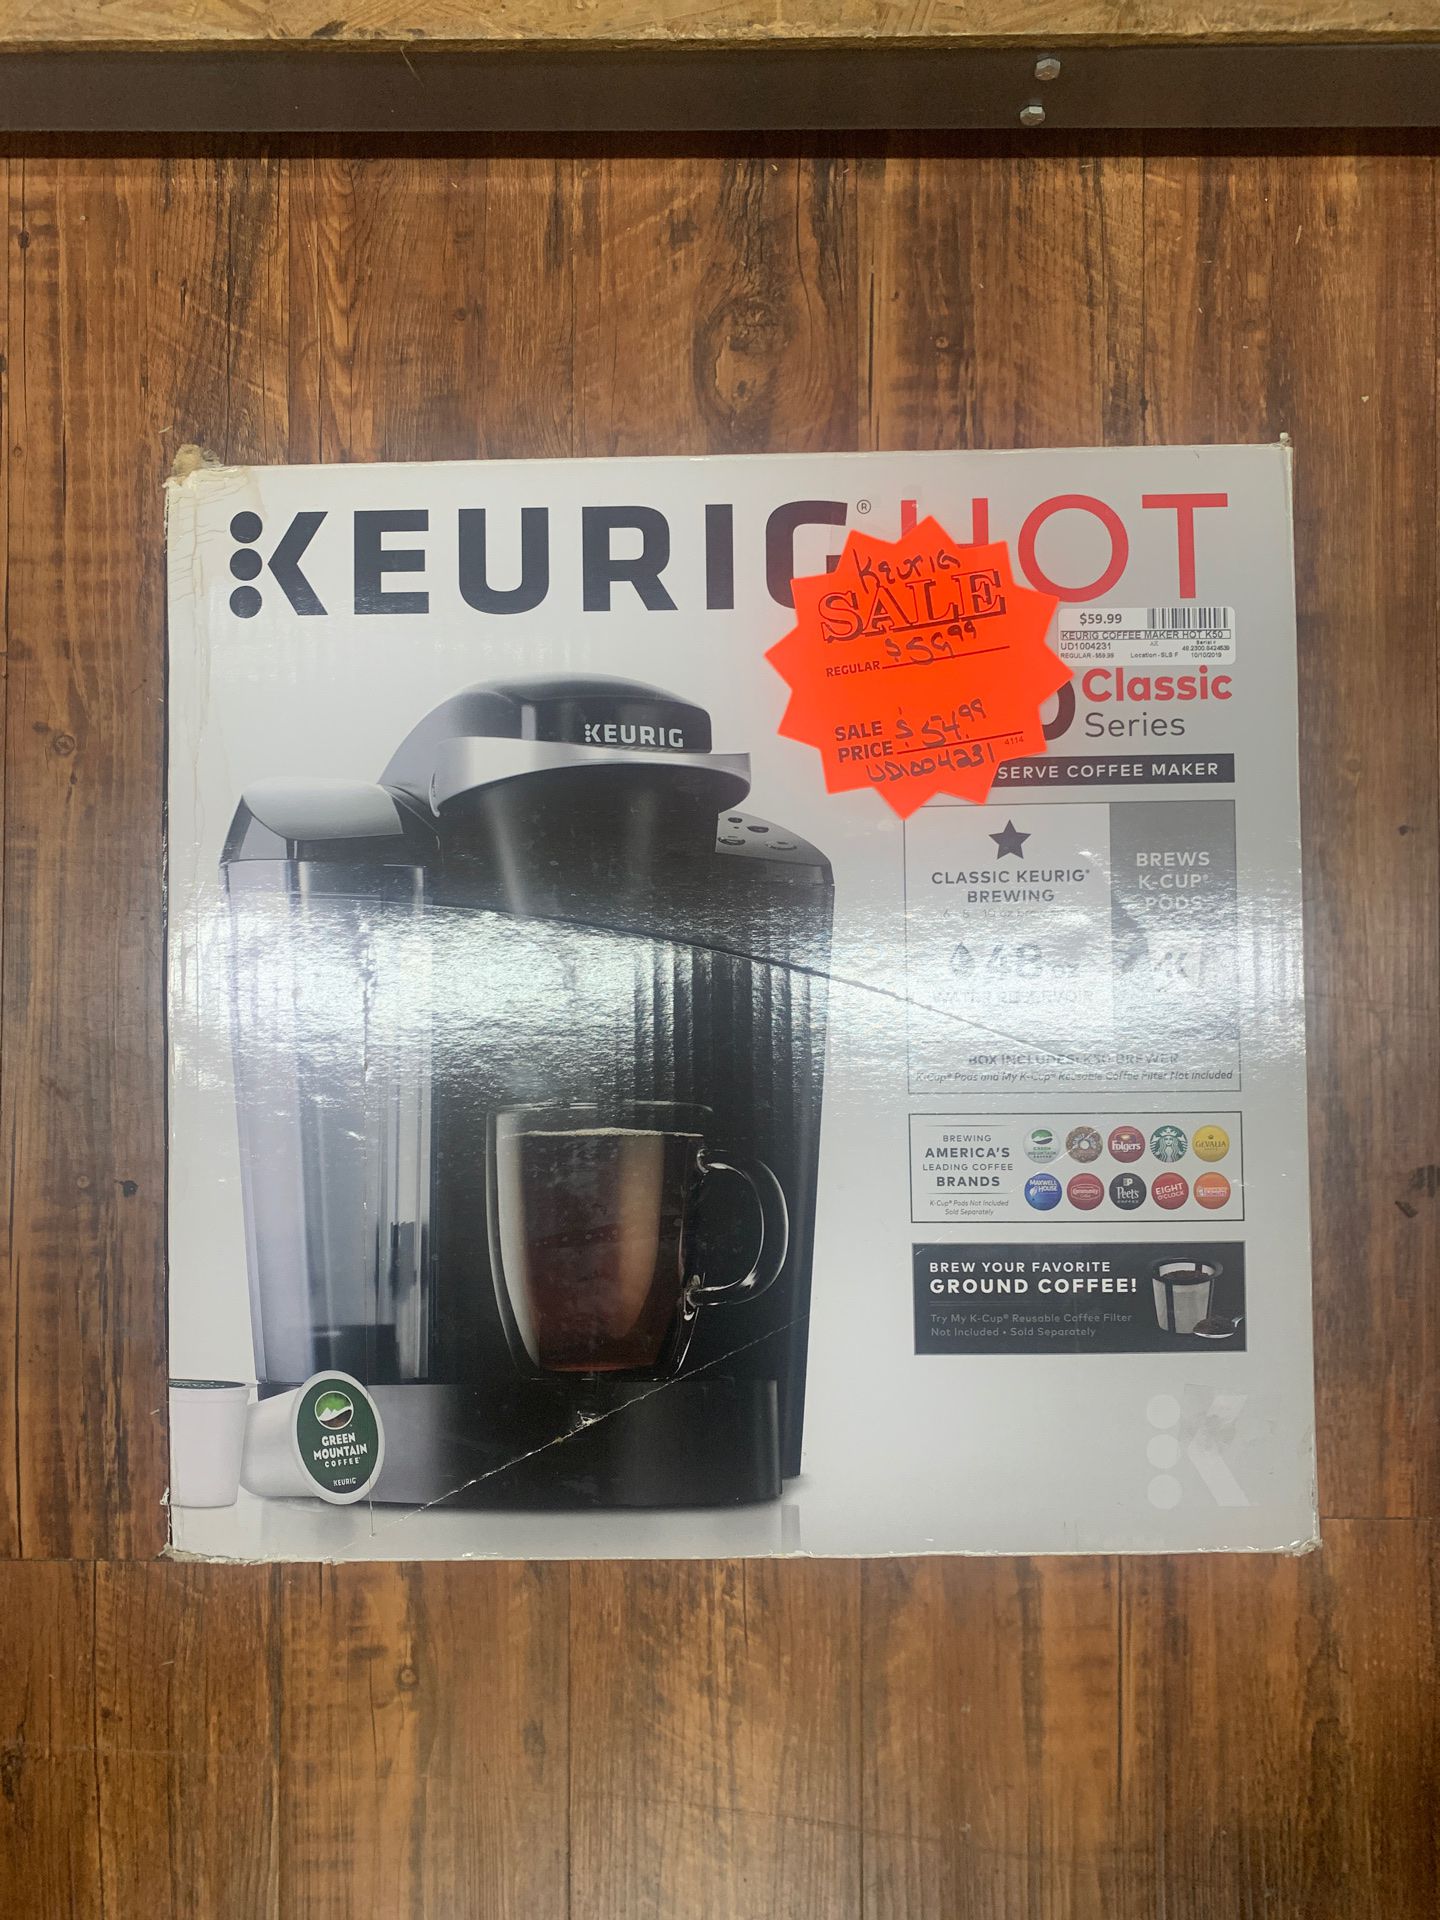 Keurig Hot K50 Classic Series